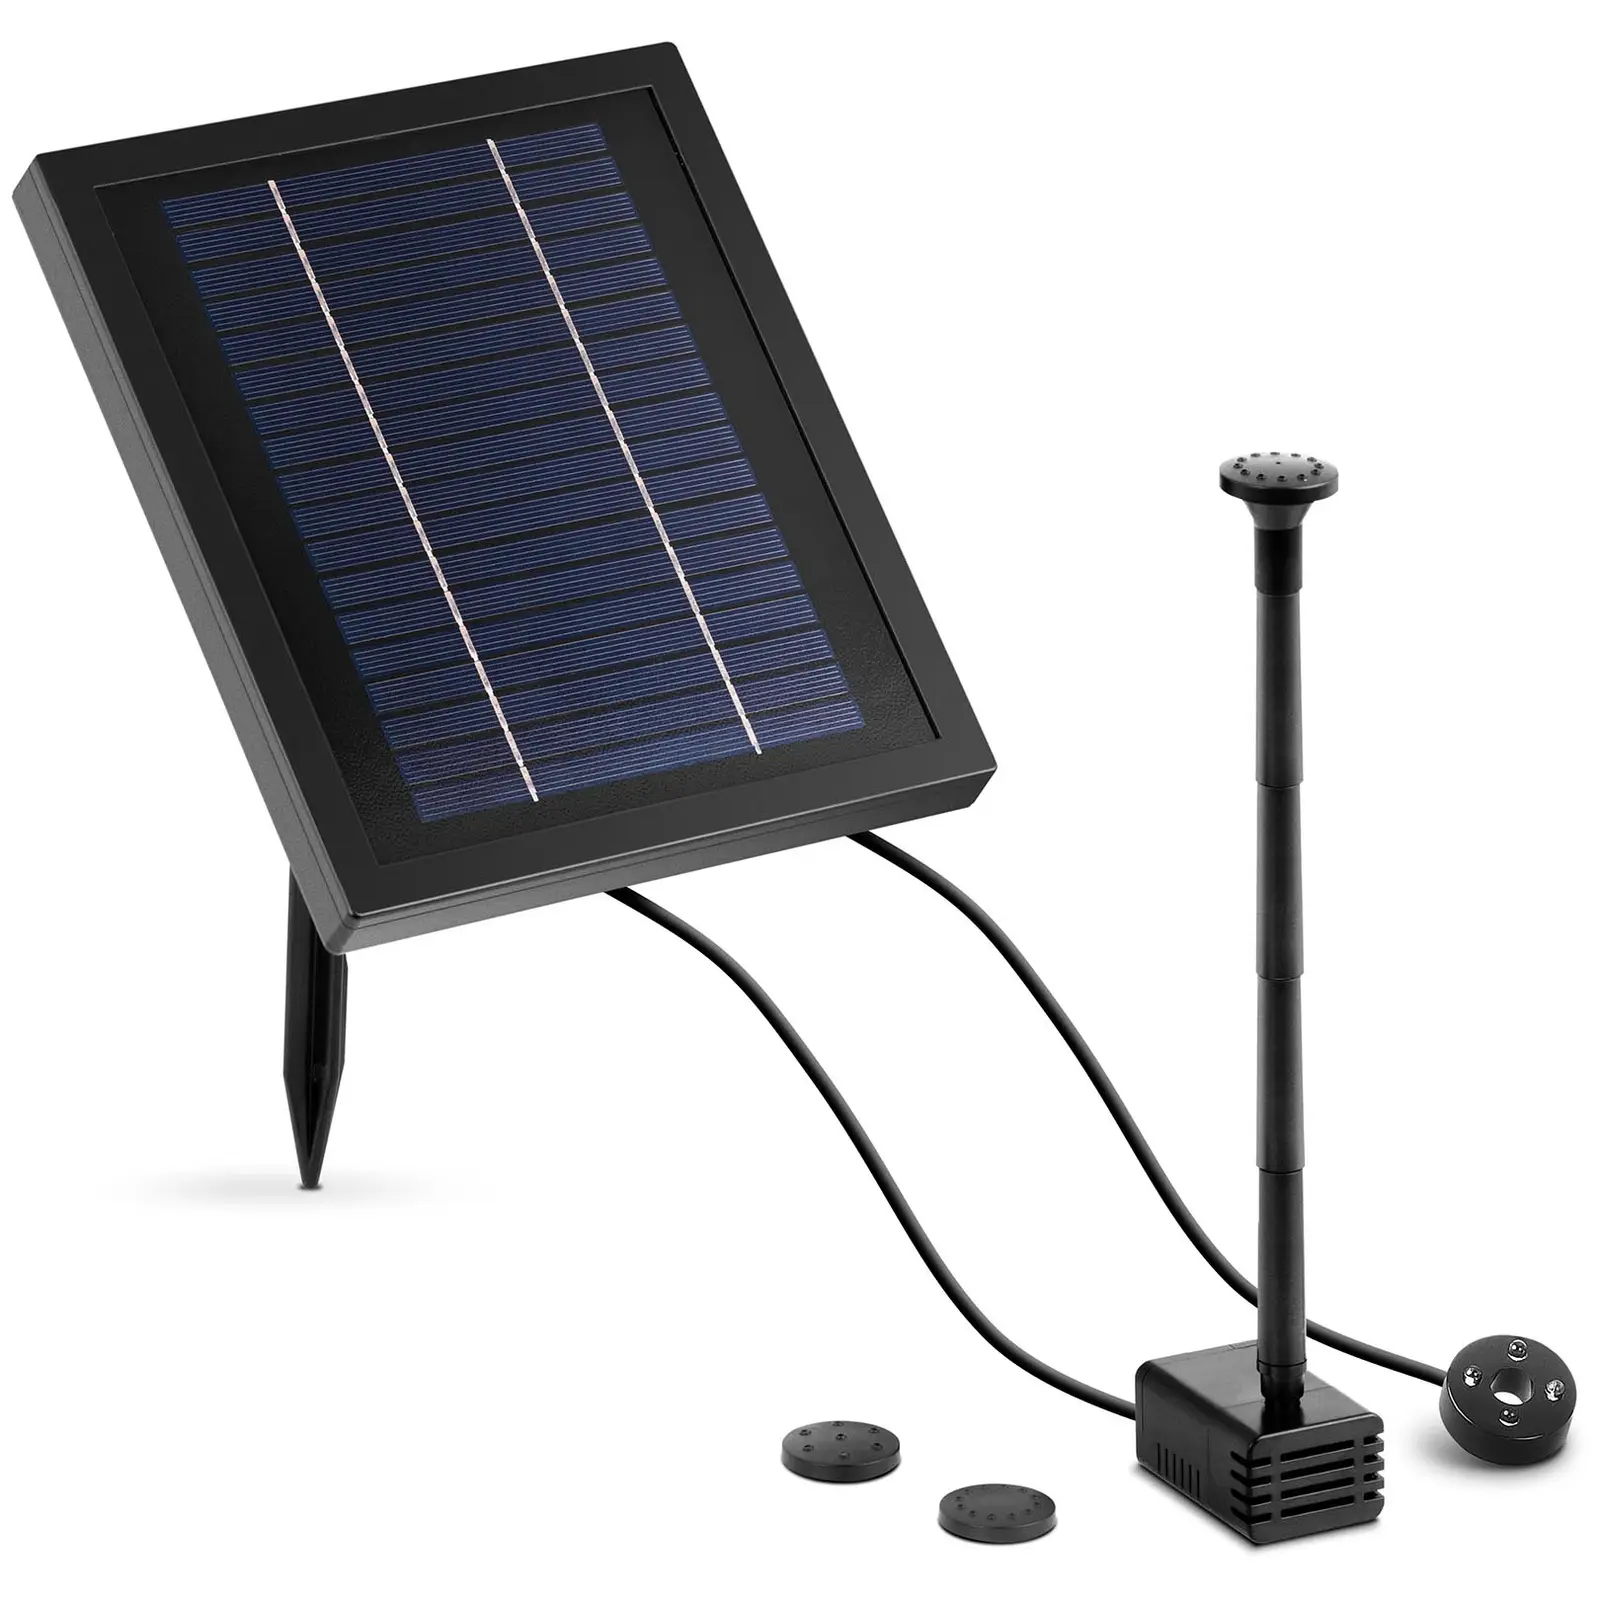 Pompa laghetto solare - 250 l/h - LED